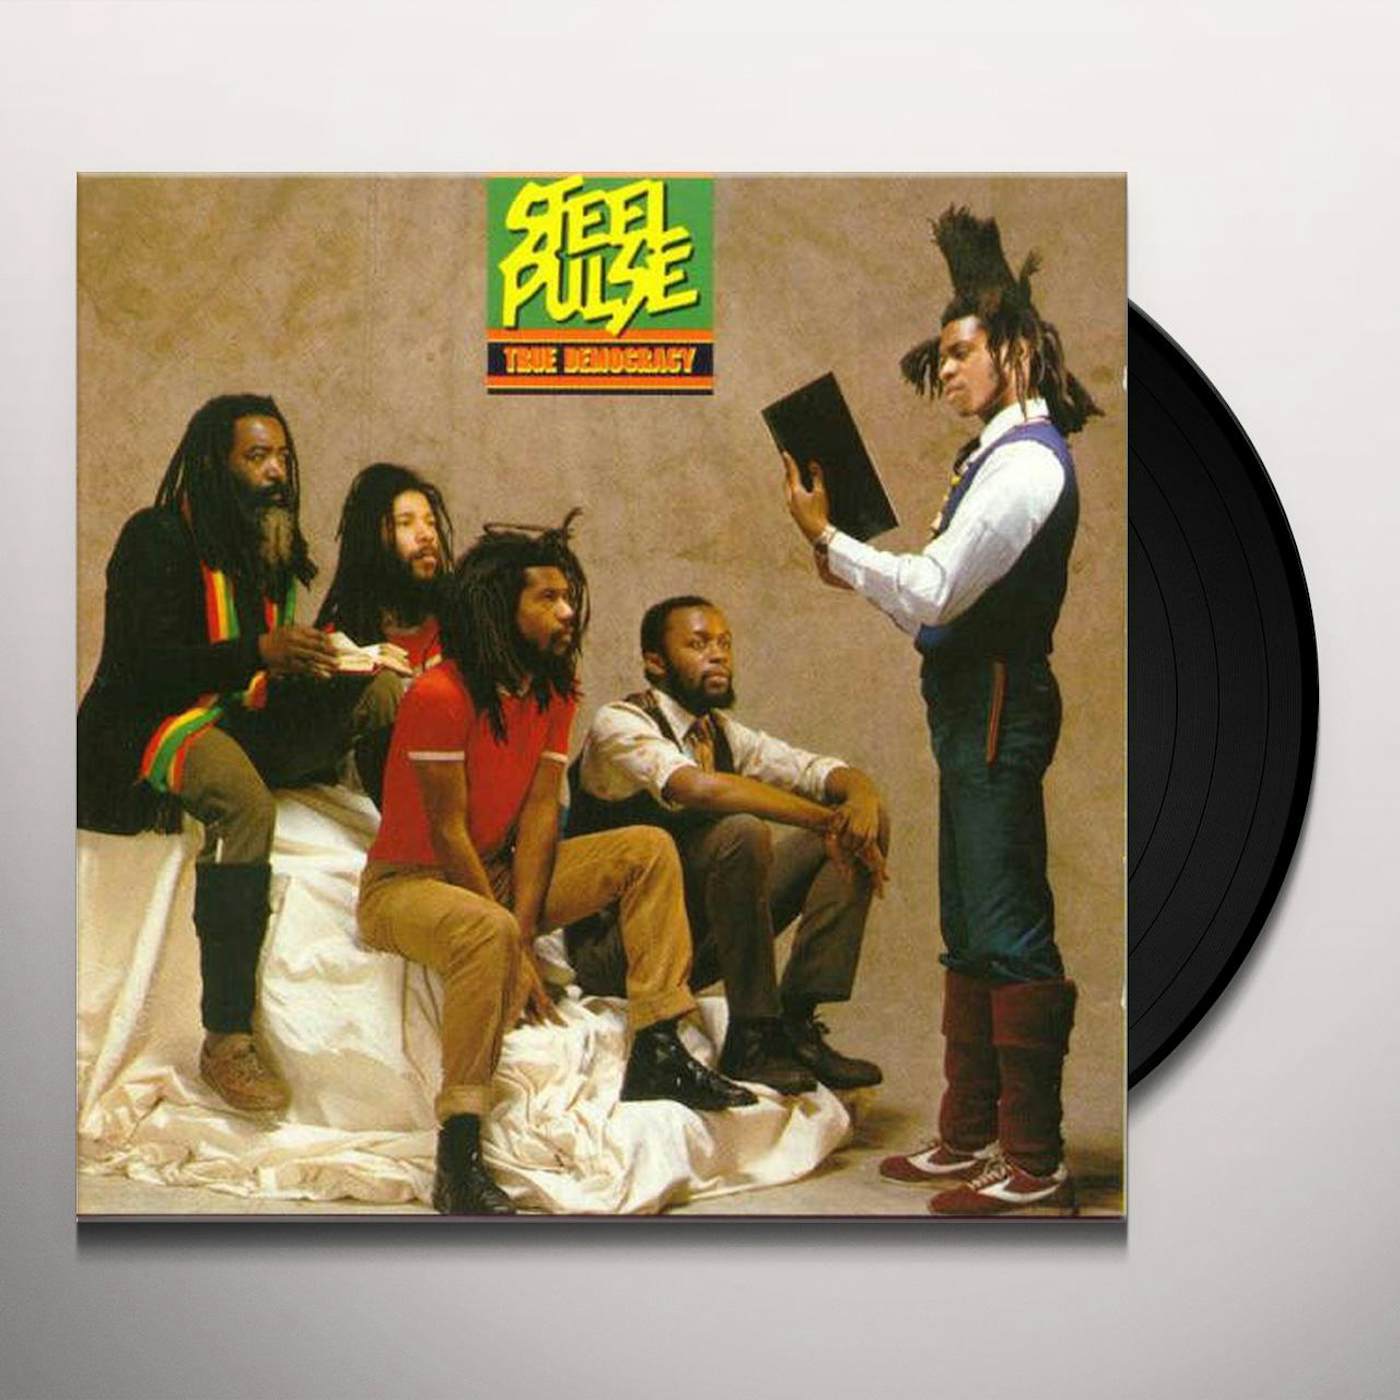 Steel Pulse TRUE DEMOCRACY Vinyl Record